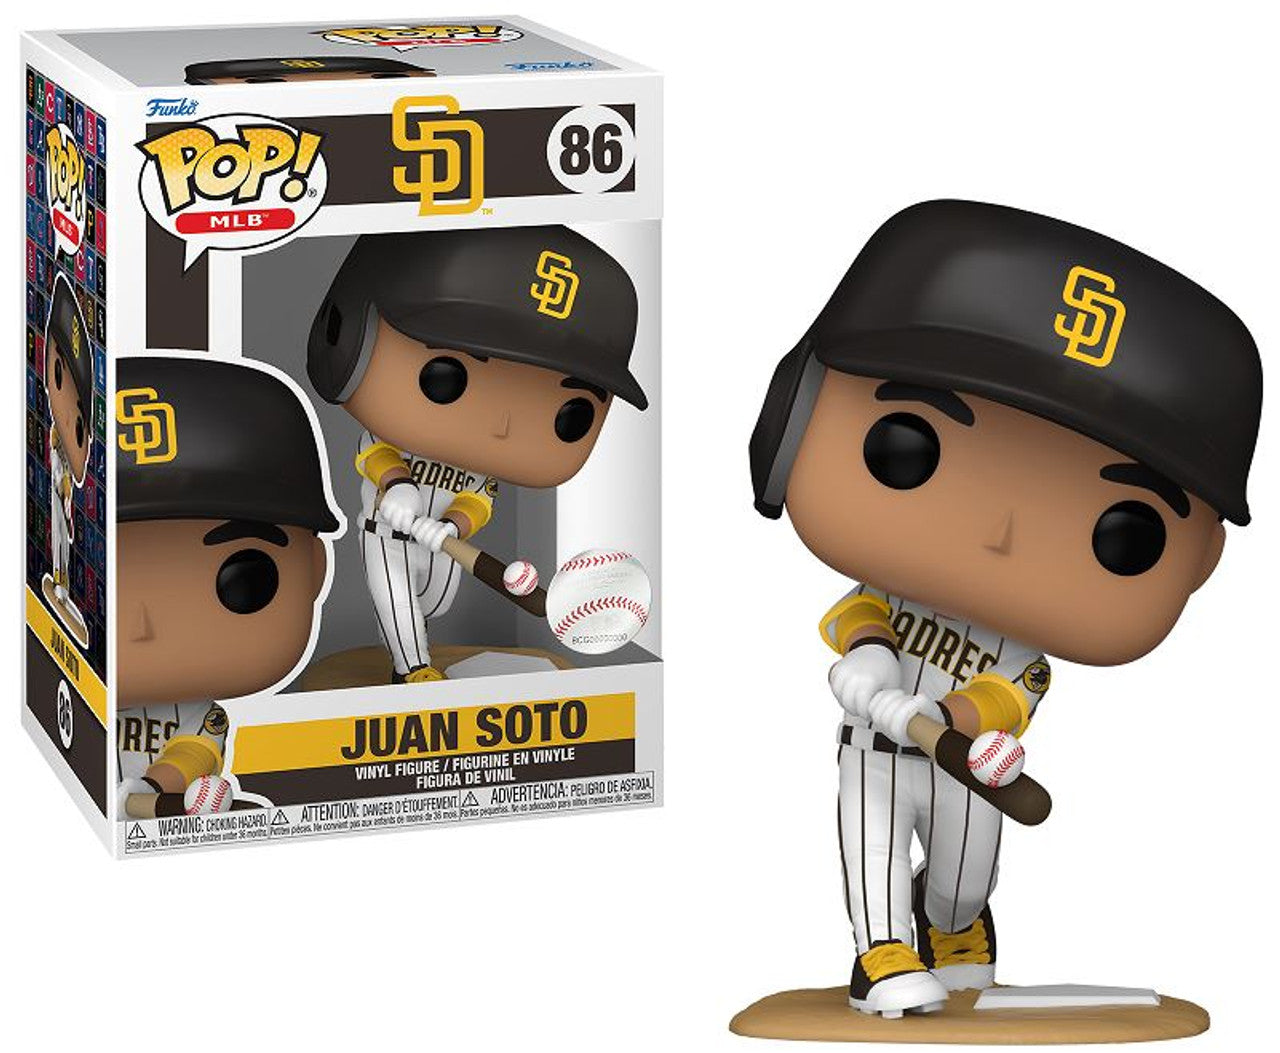 MLB Pop! Series 6 Juan Soto San Diego Padres